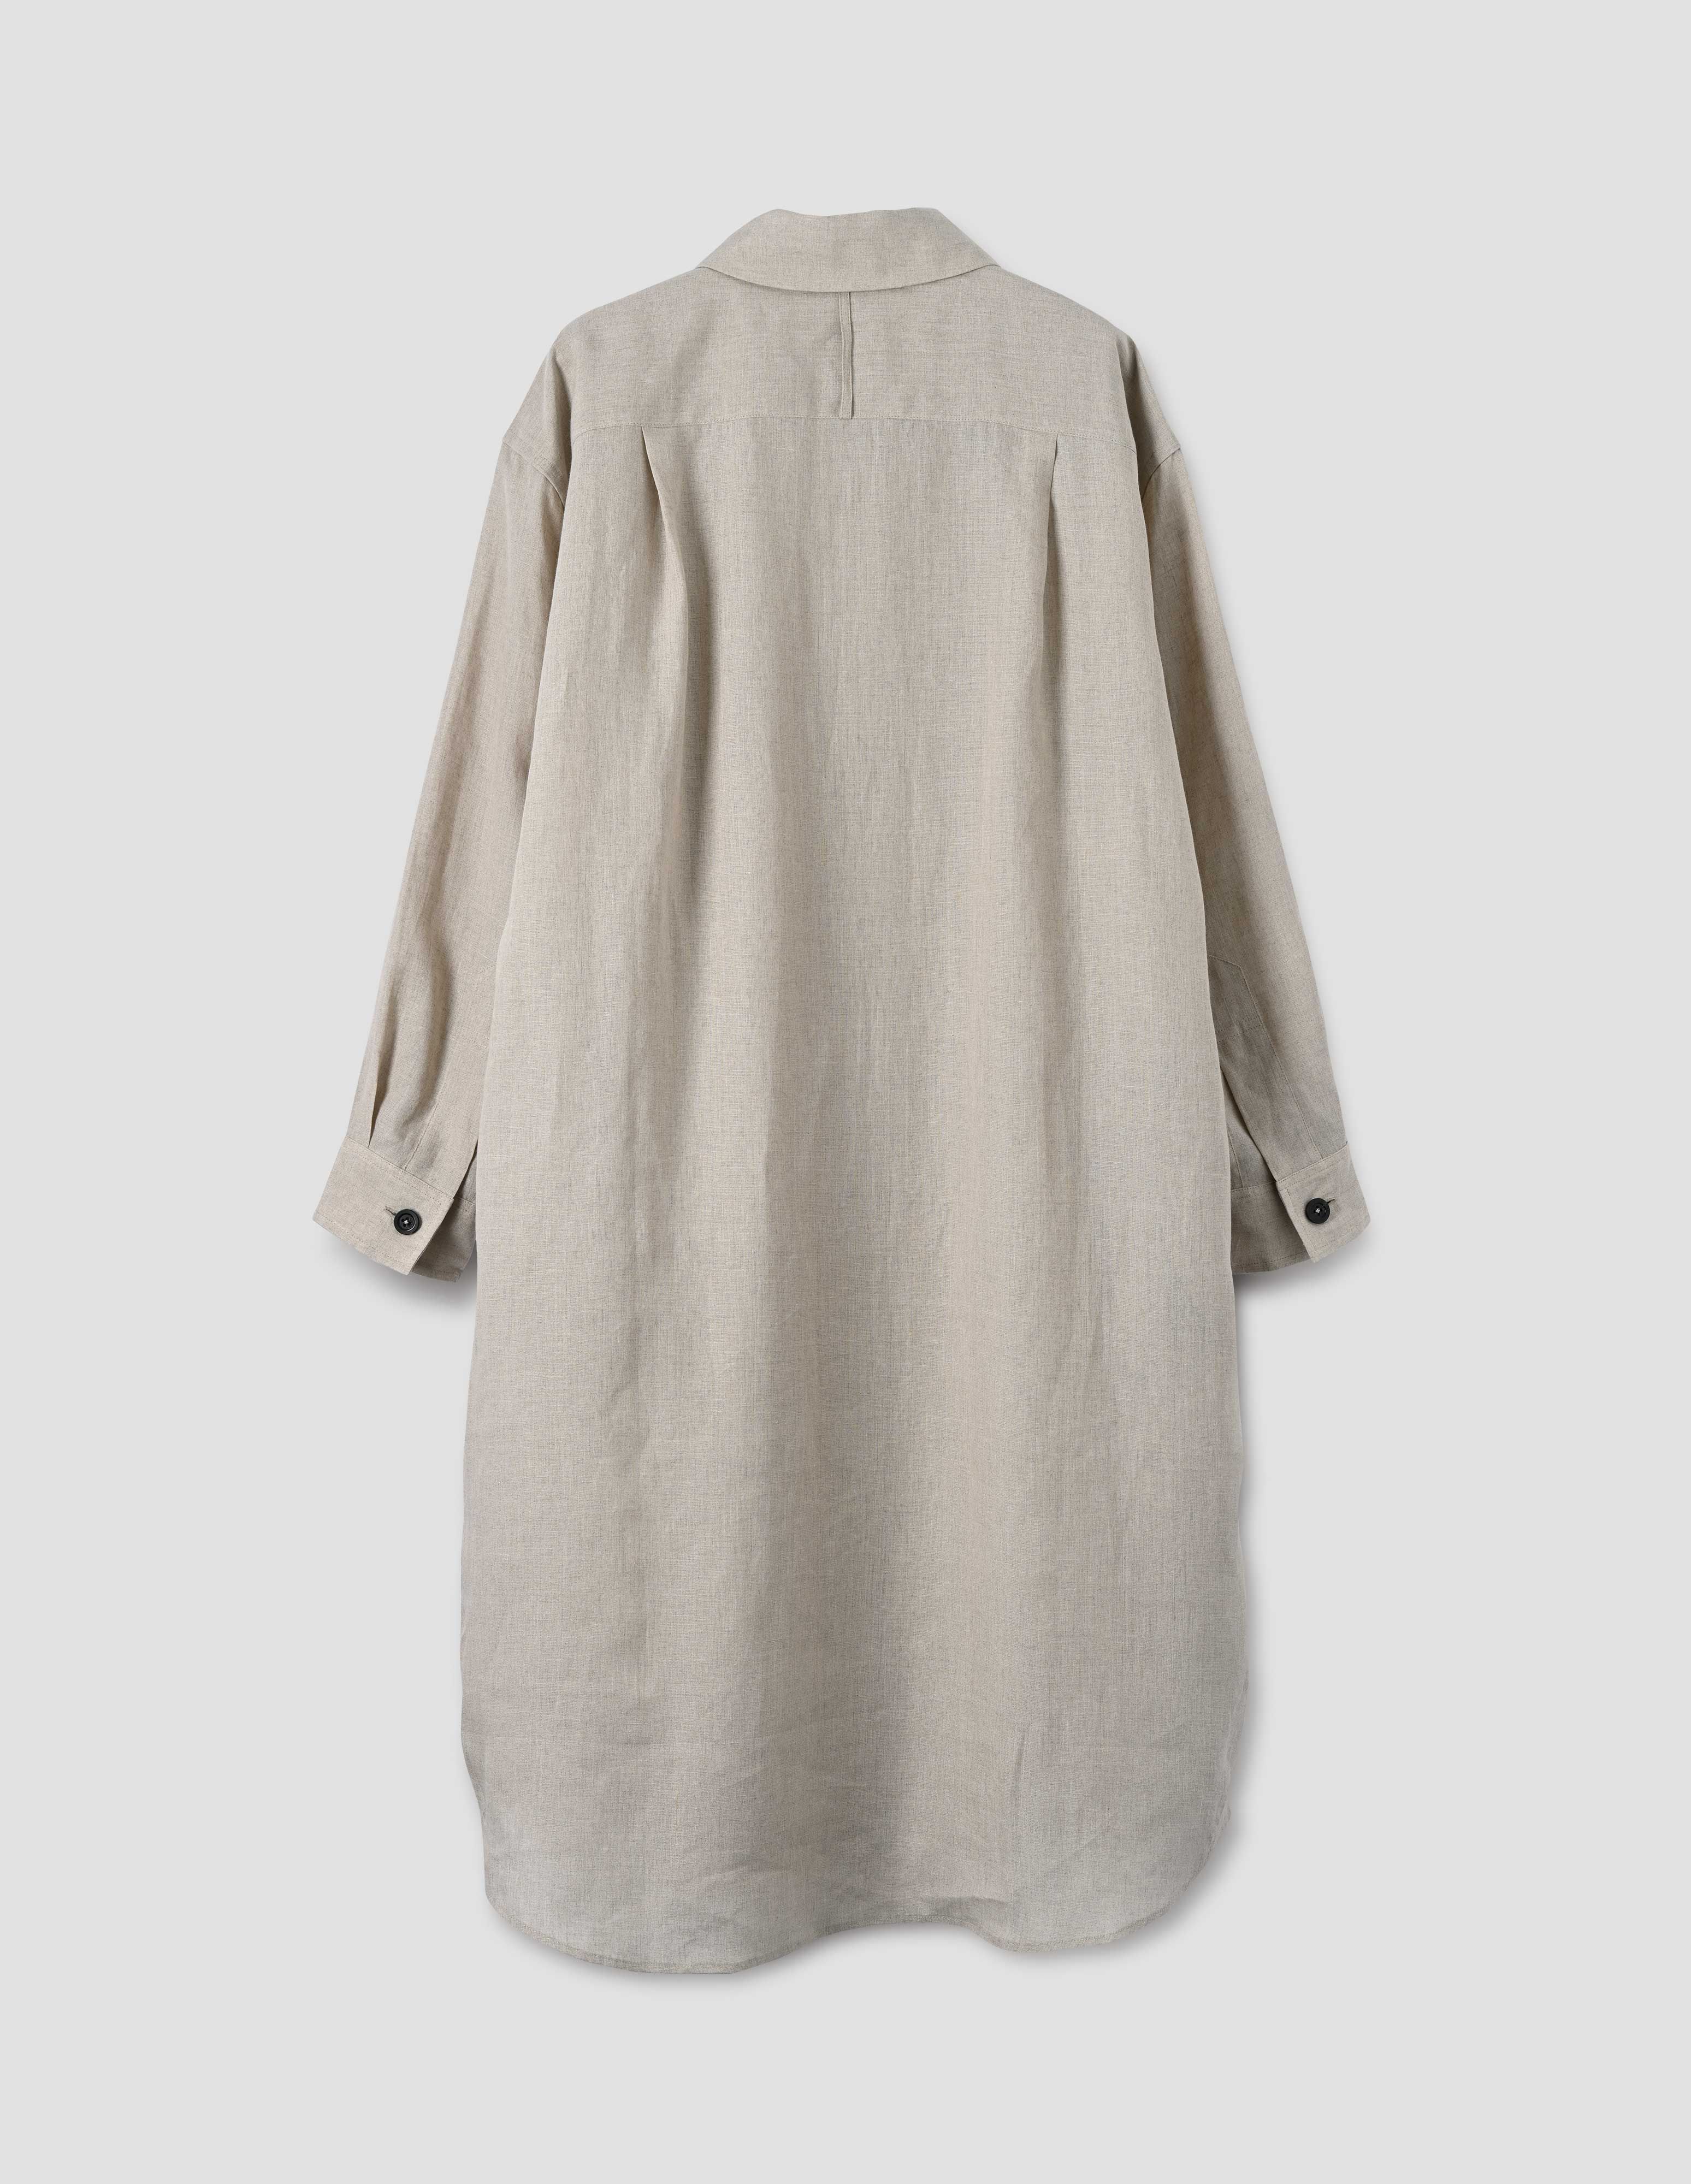 MARGARET HOWELL - Natural linen oversized shirt dress | Margaret Howell